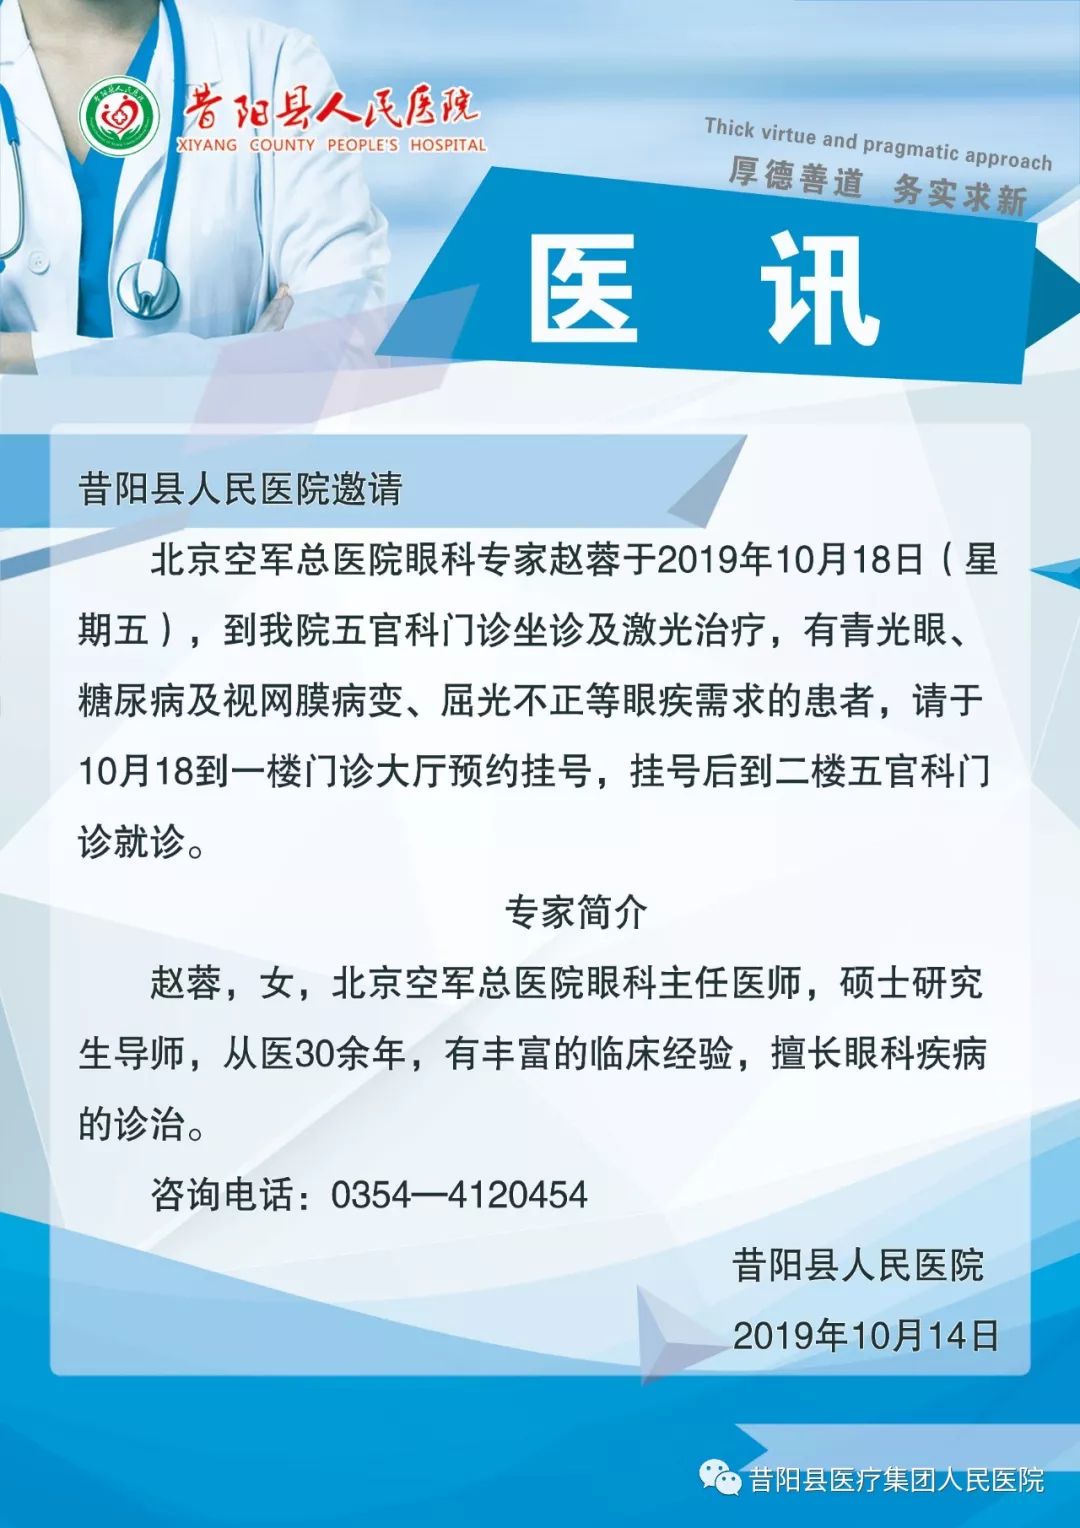 昔阳县人民医院五官科10月份邀请北京眼科专家坐诊,手术!